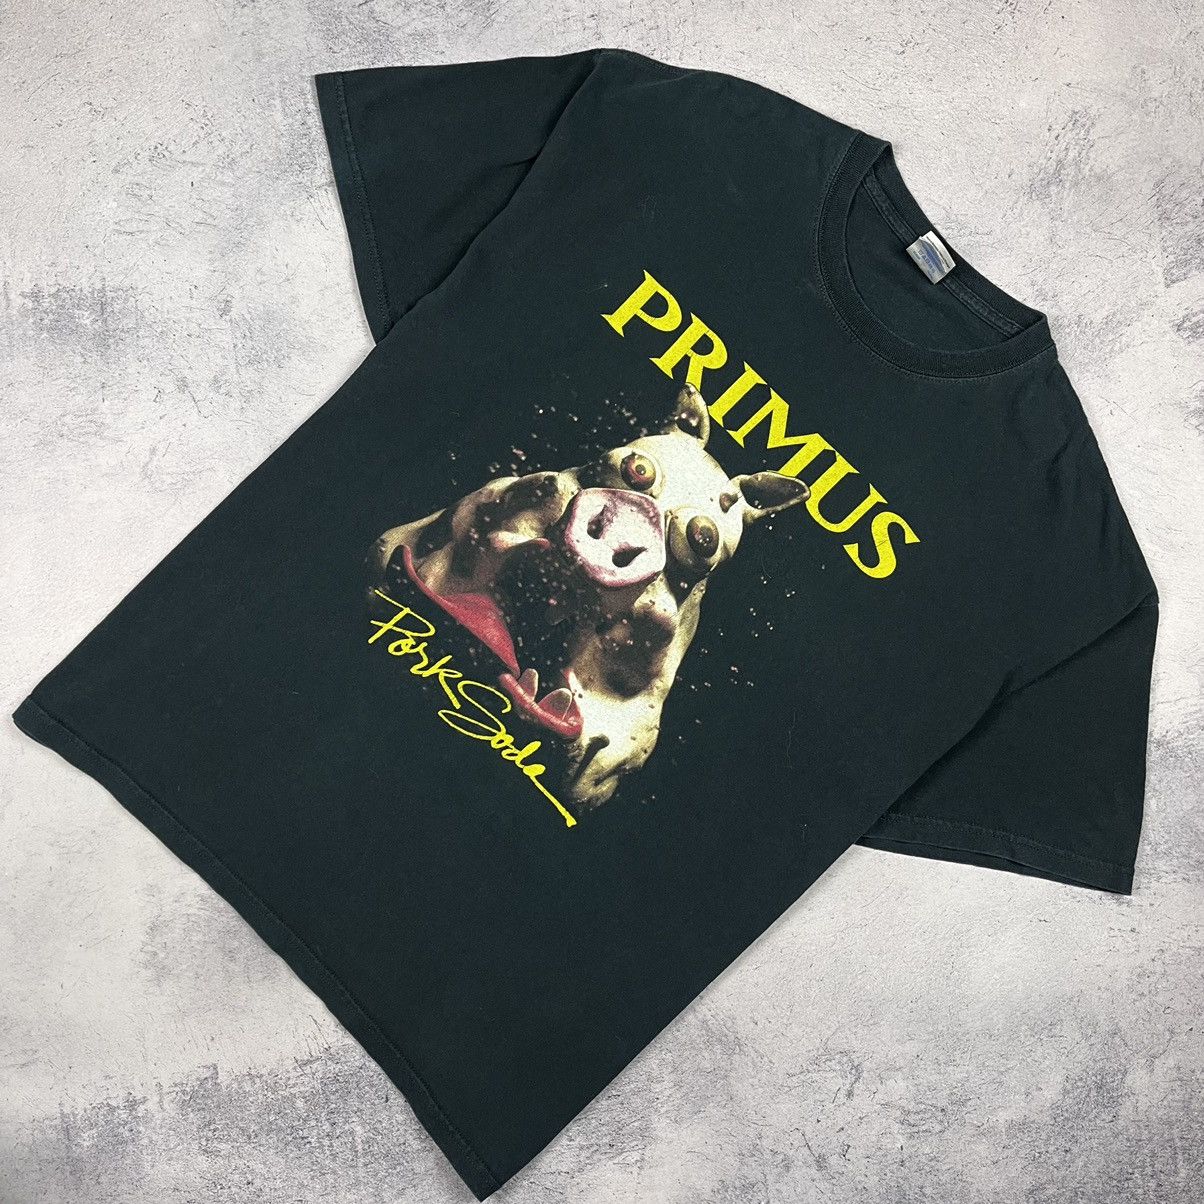 Vintage Vintage Primus Pork Soda rock band heavy cotton tee 90's ...